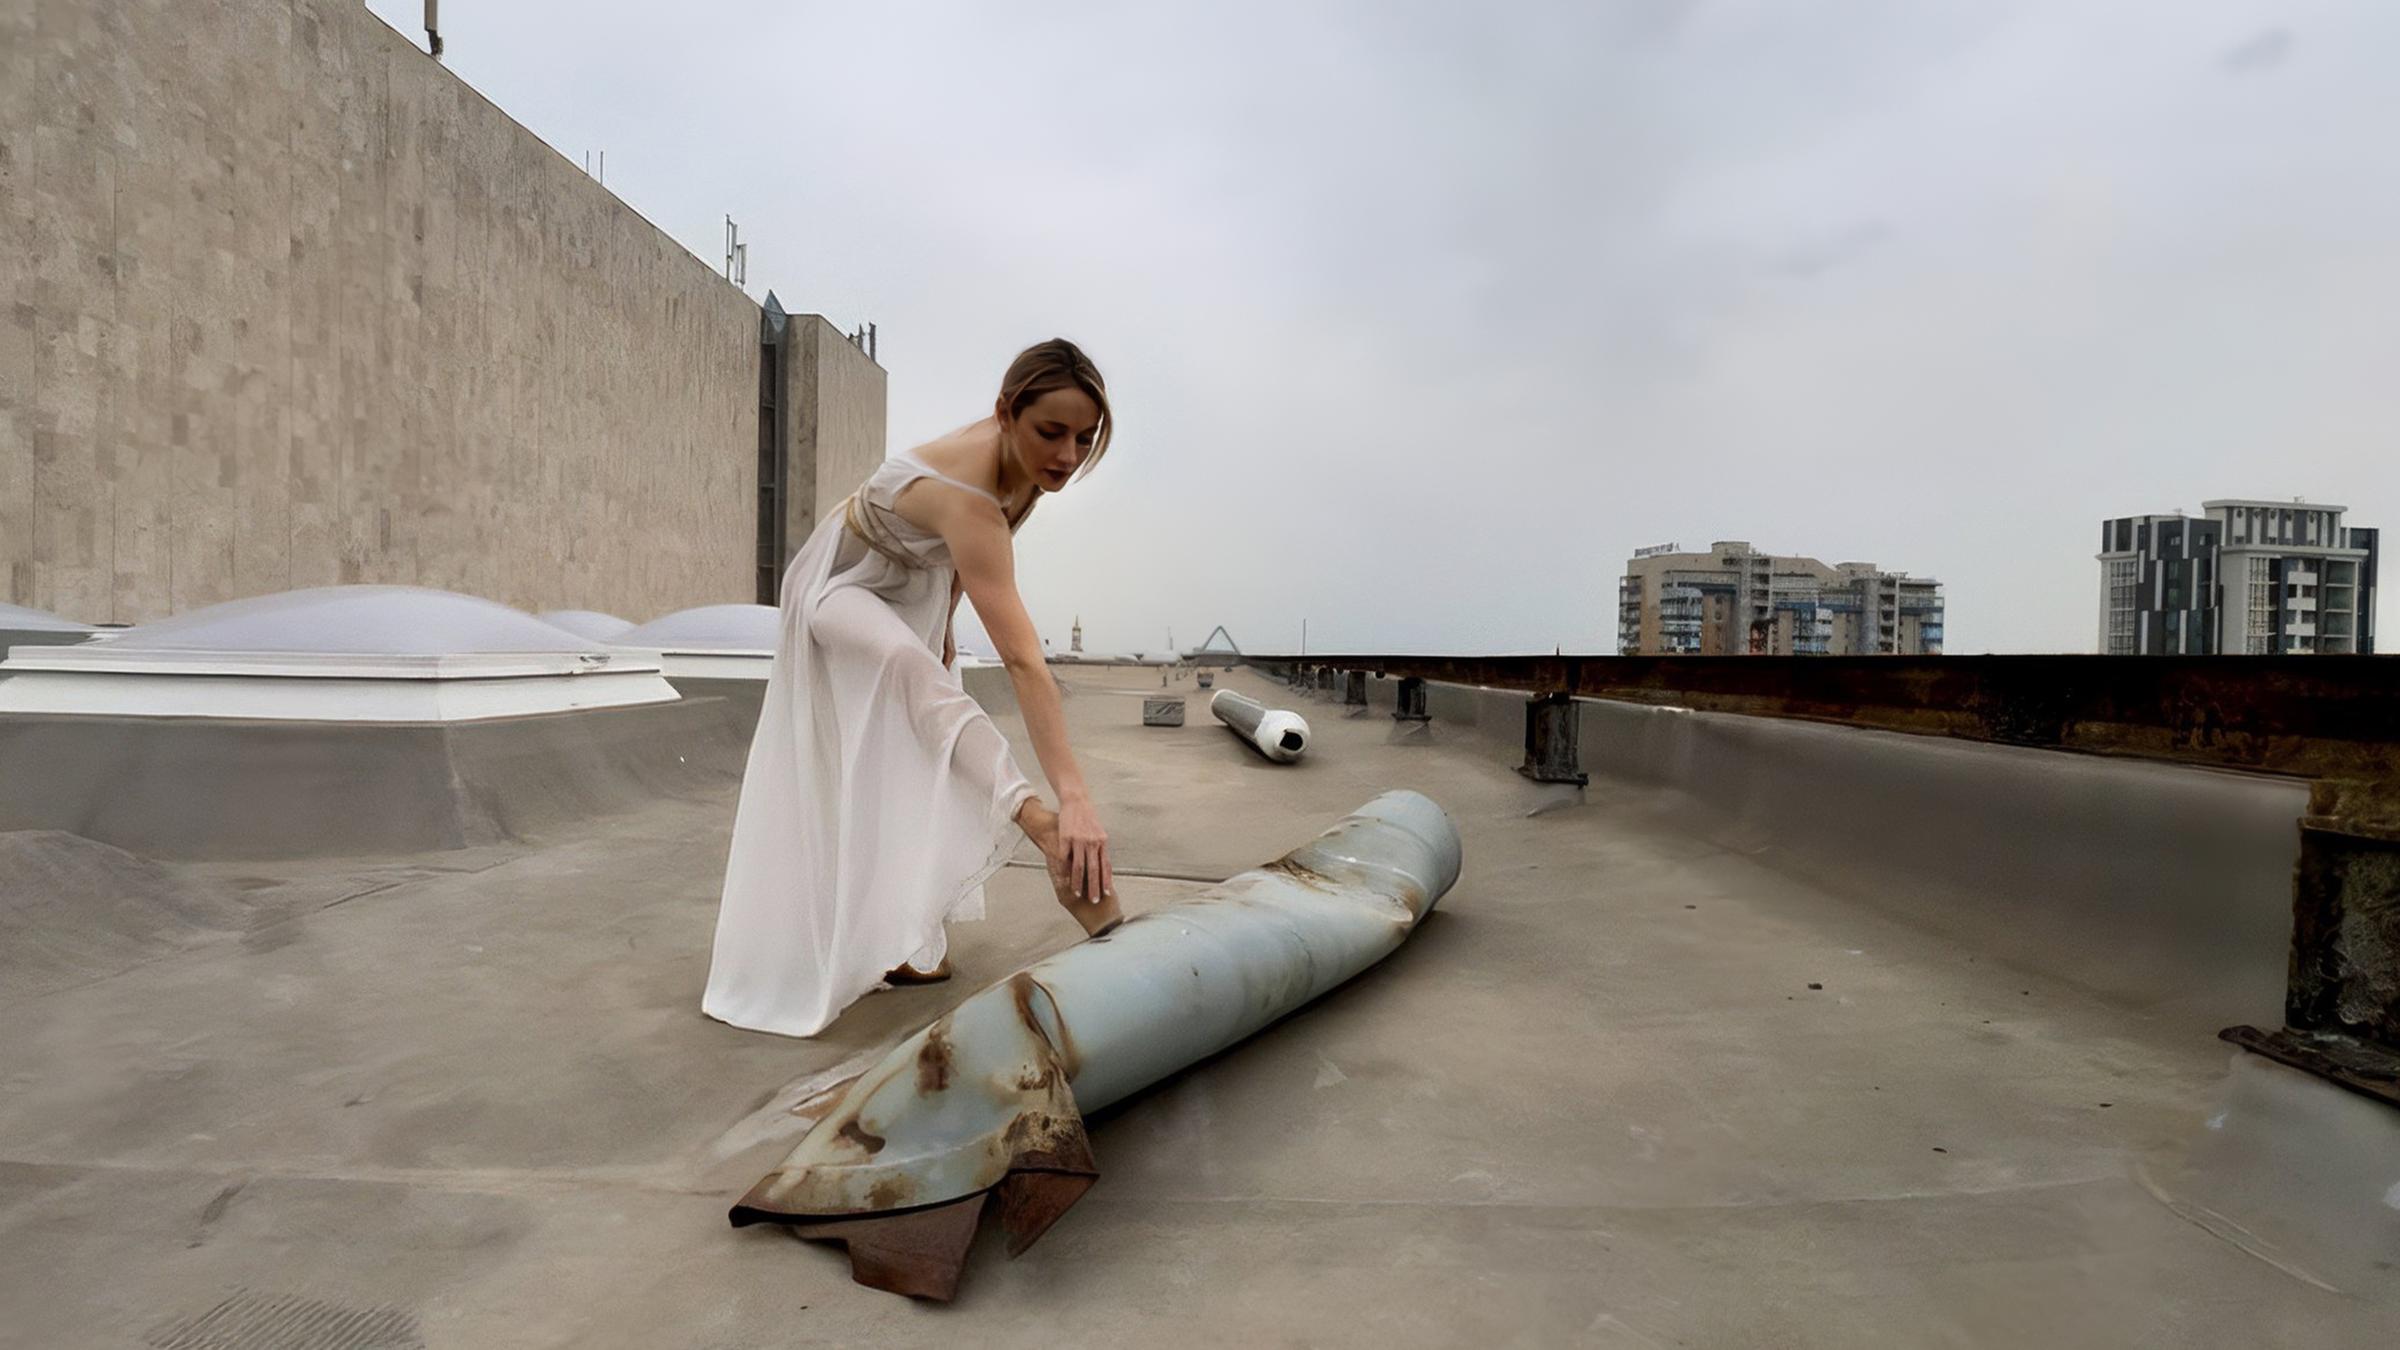 Eine junge Ballerina in durchsichtigem langem Gewand steht auf dem Dach eines Hochhausses und dehnt sich, indem sie einen Fuß auf den Überresten einer Rakete aufstellt.